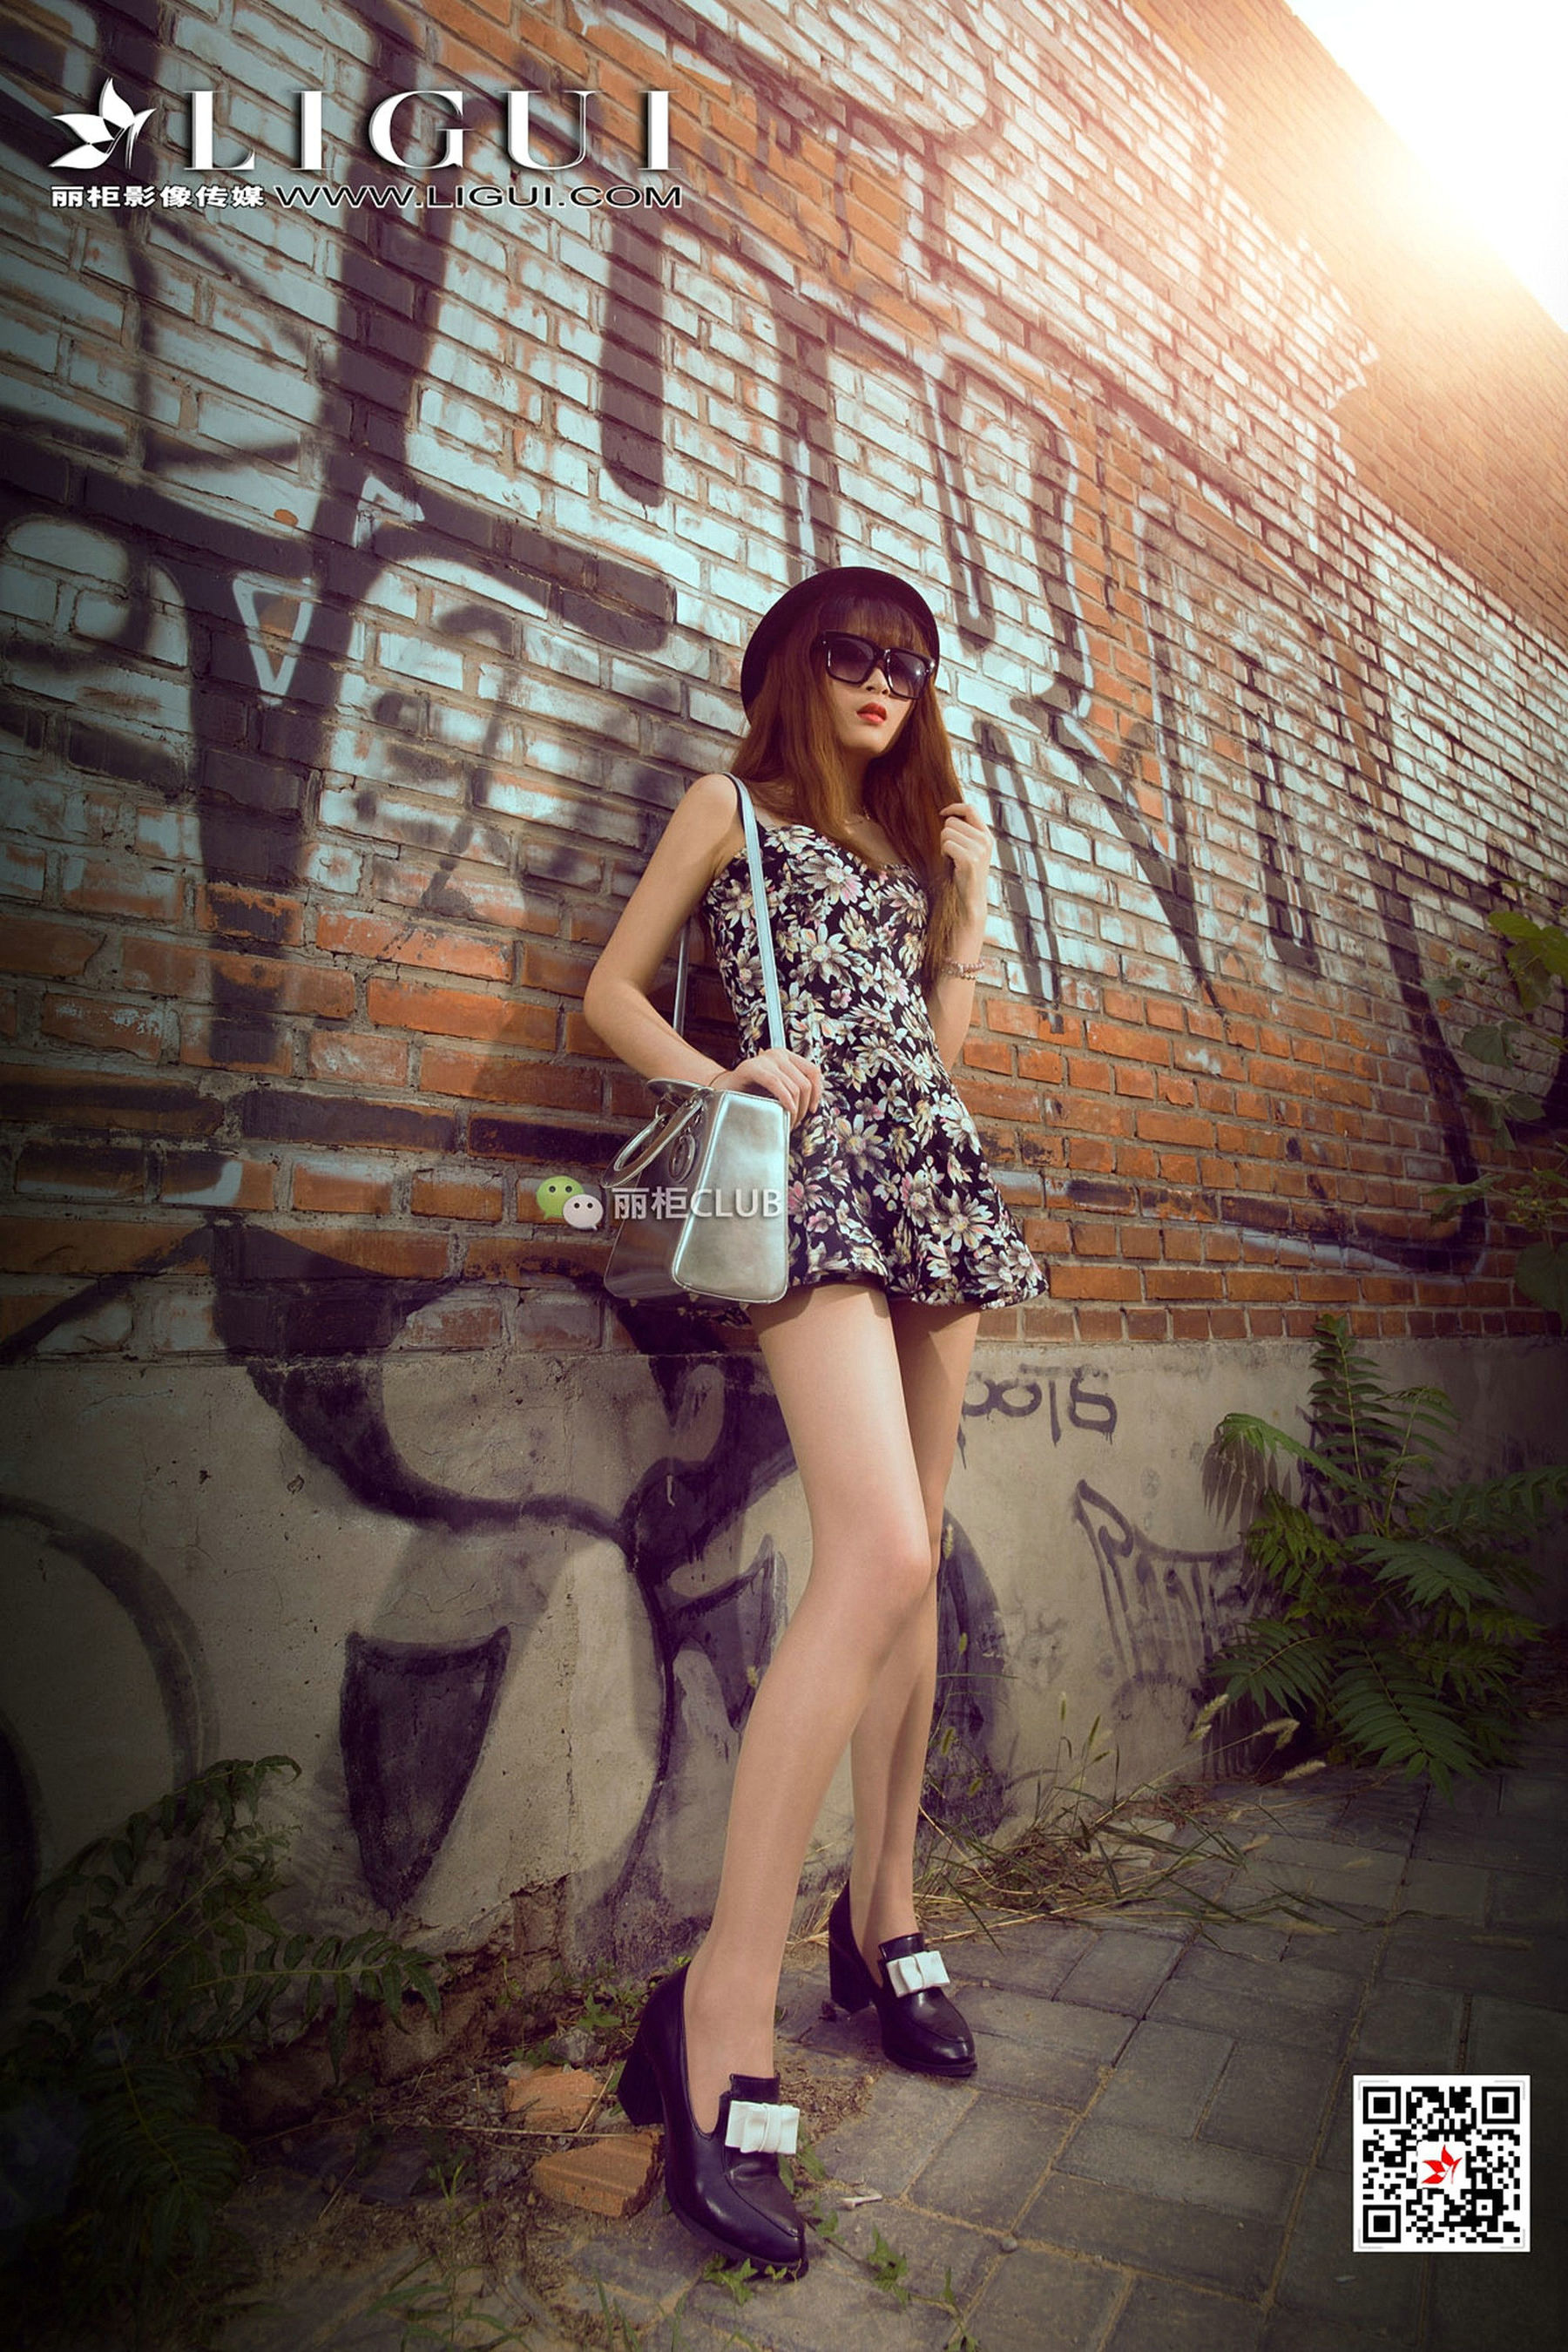 Model Yunnian “Dress Street Sweater Silk Foot” [柜 ligui] photo set